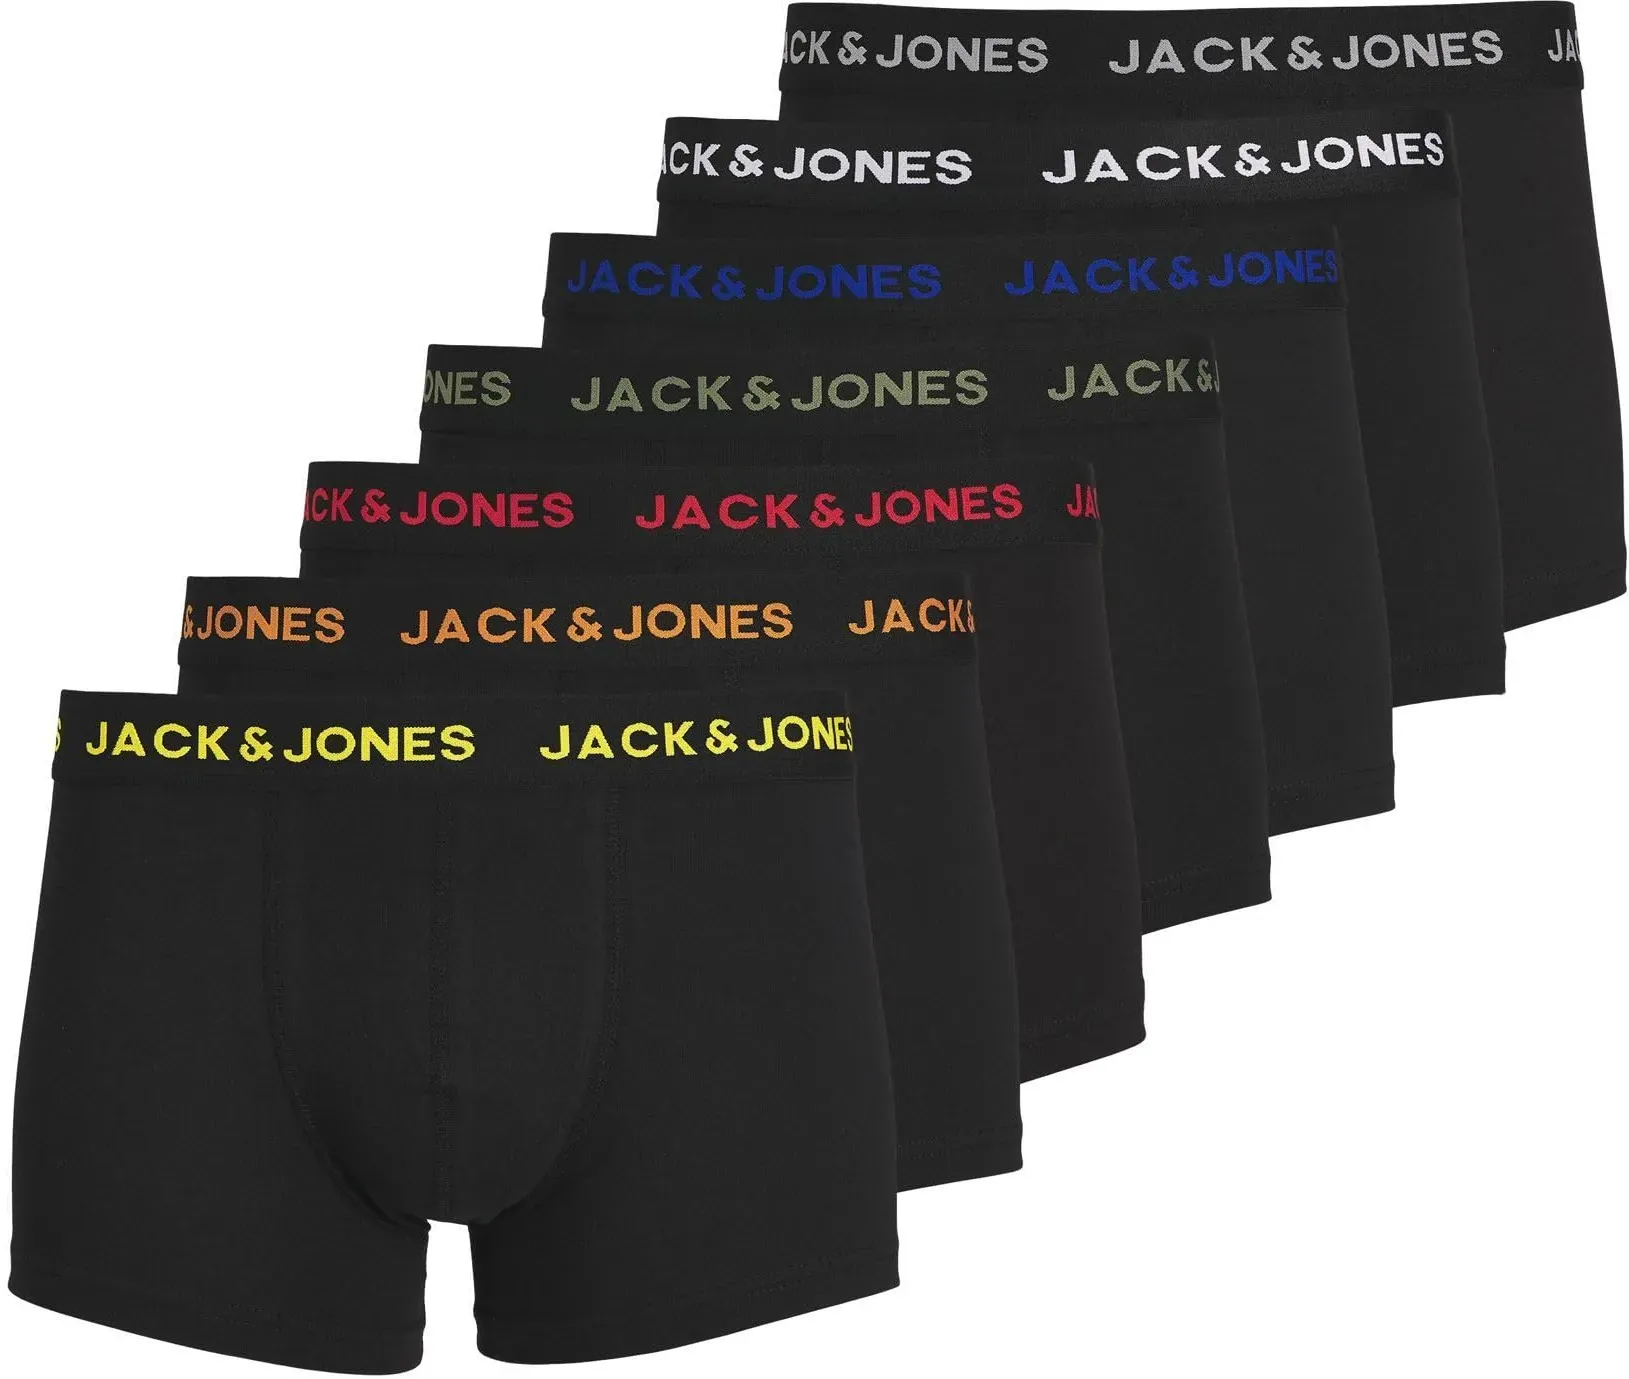 Jack & Jones Herren JACBASIC Trunks 7 Pack NOOS 12165587, Black/Black - Black - Black -, S